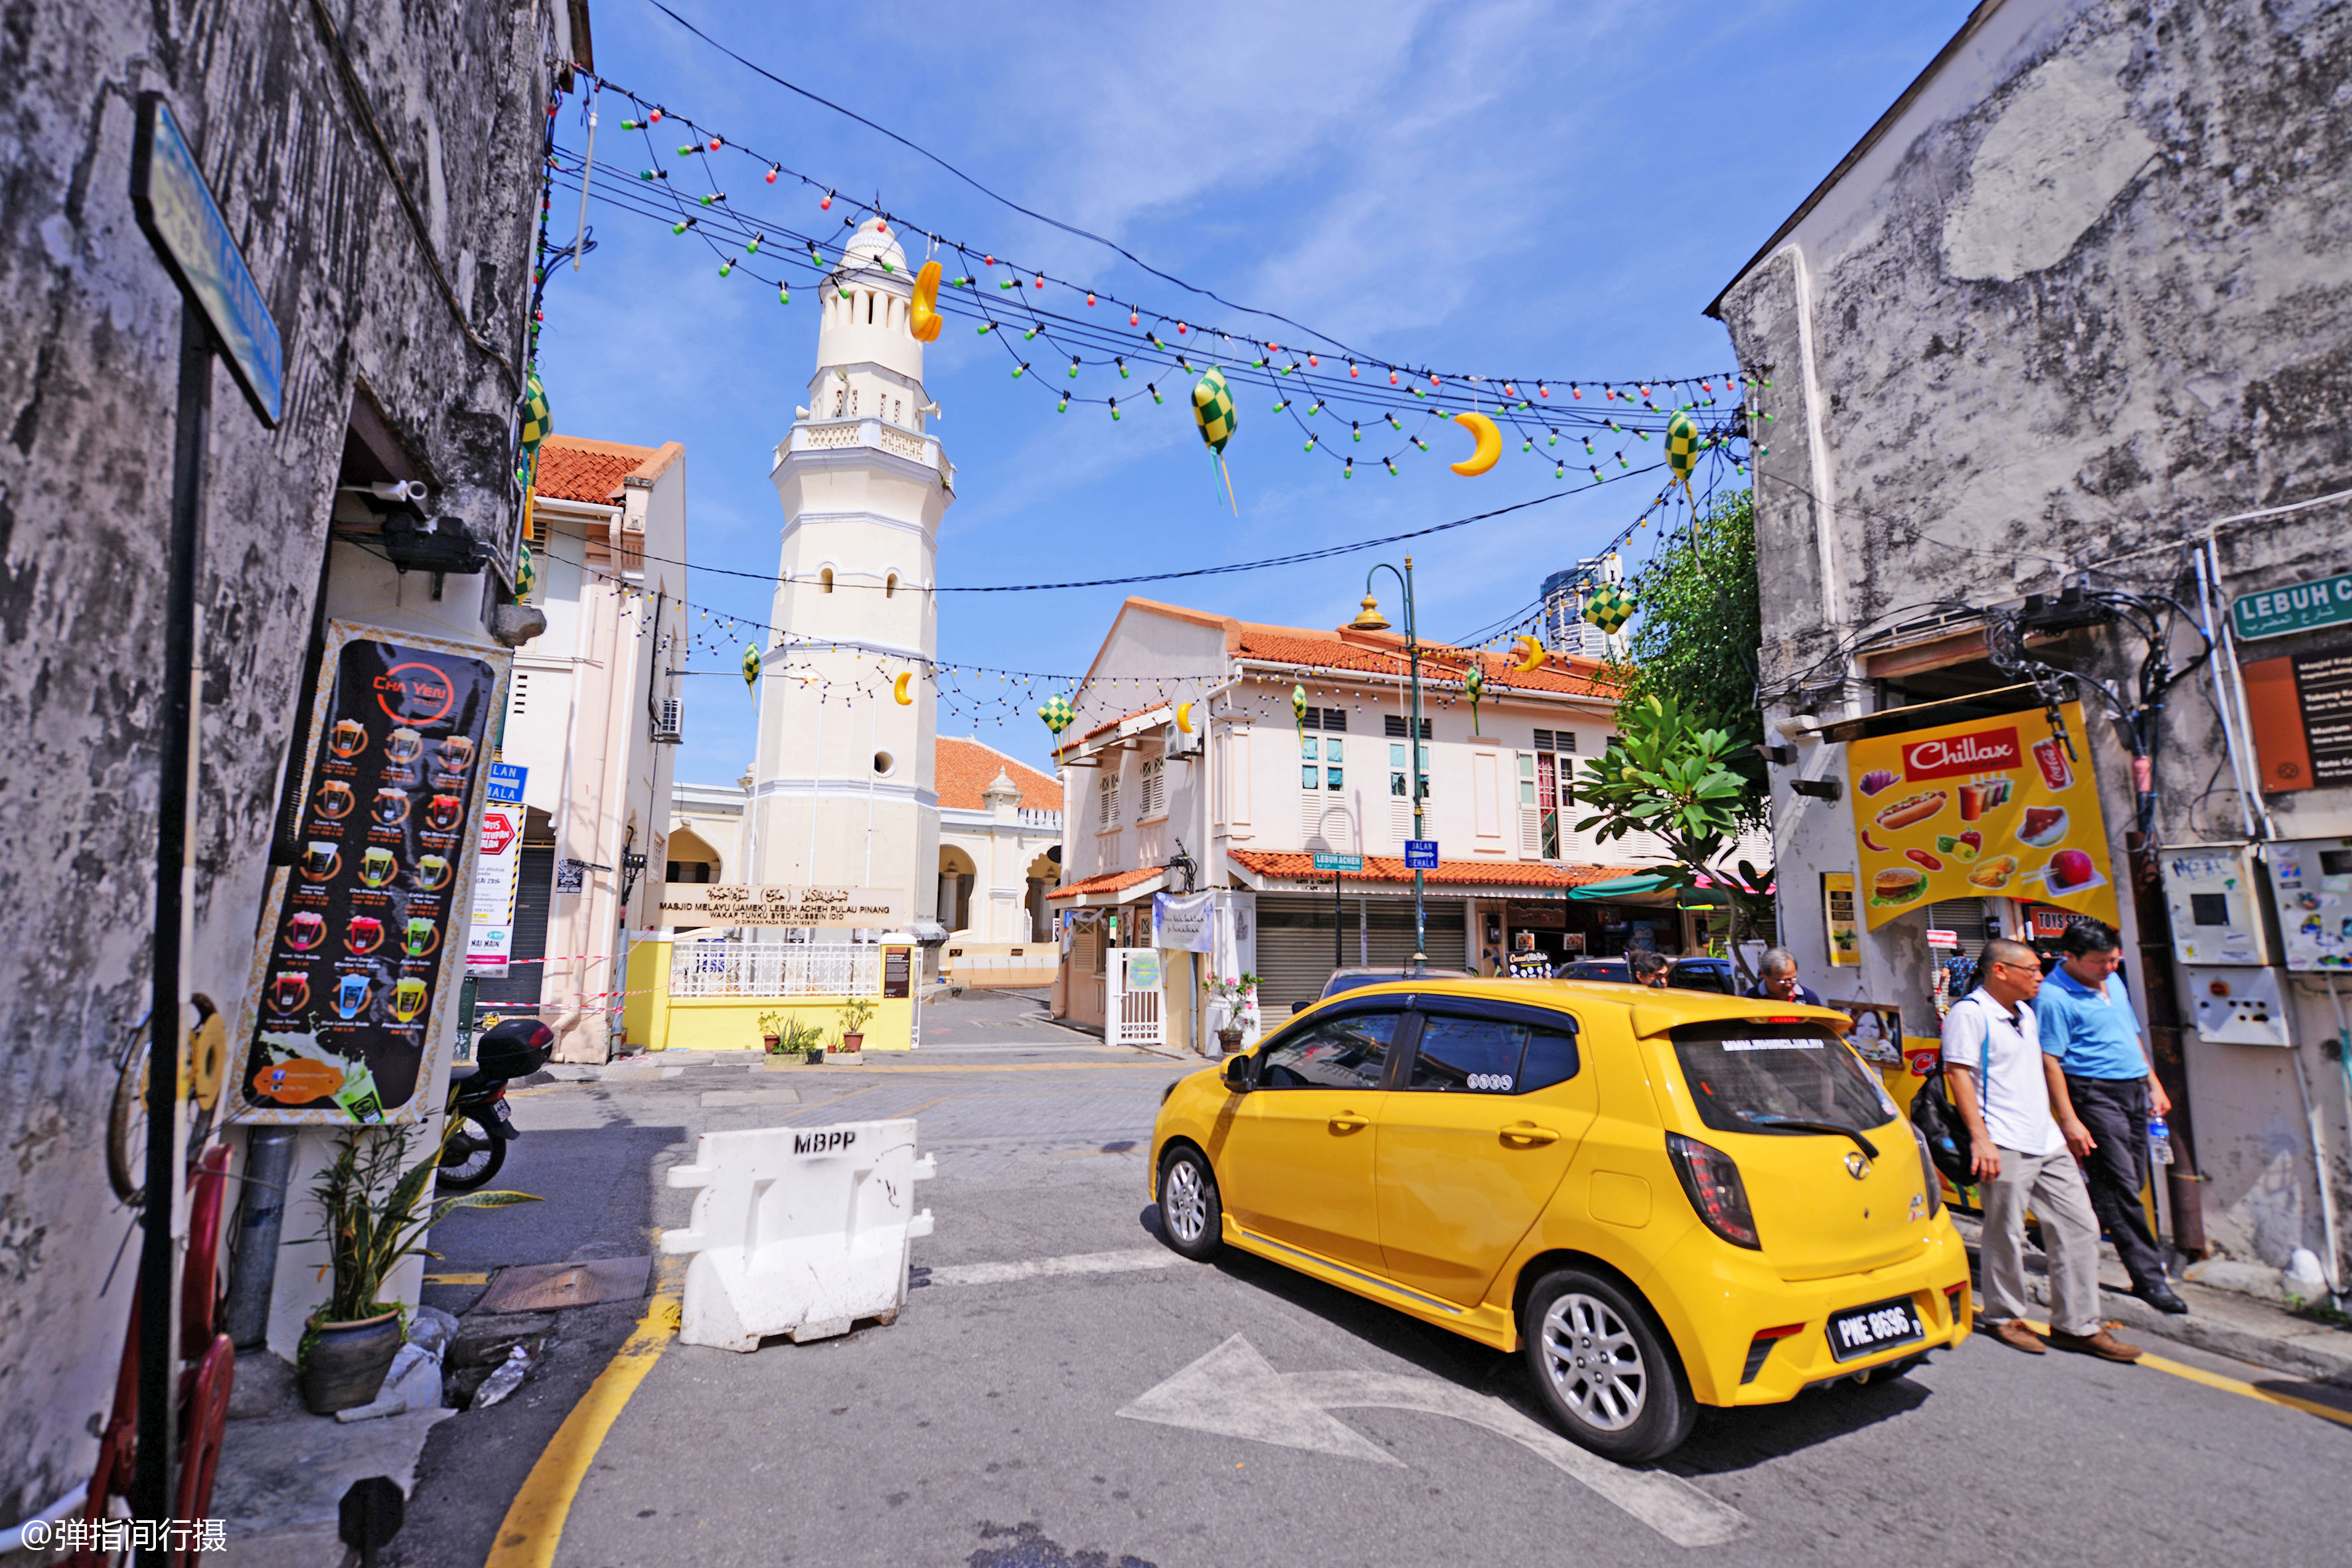 原创马来西亚最文艺的小城,街上到处是中文招牌,还获评最佳美食之城